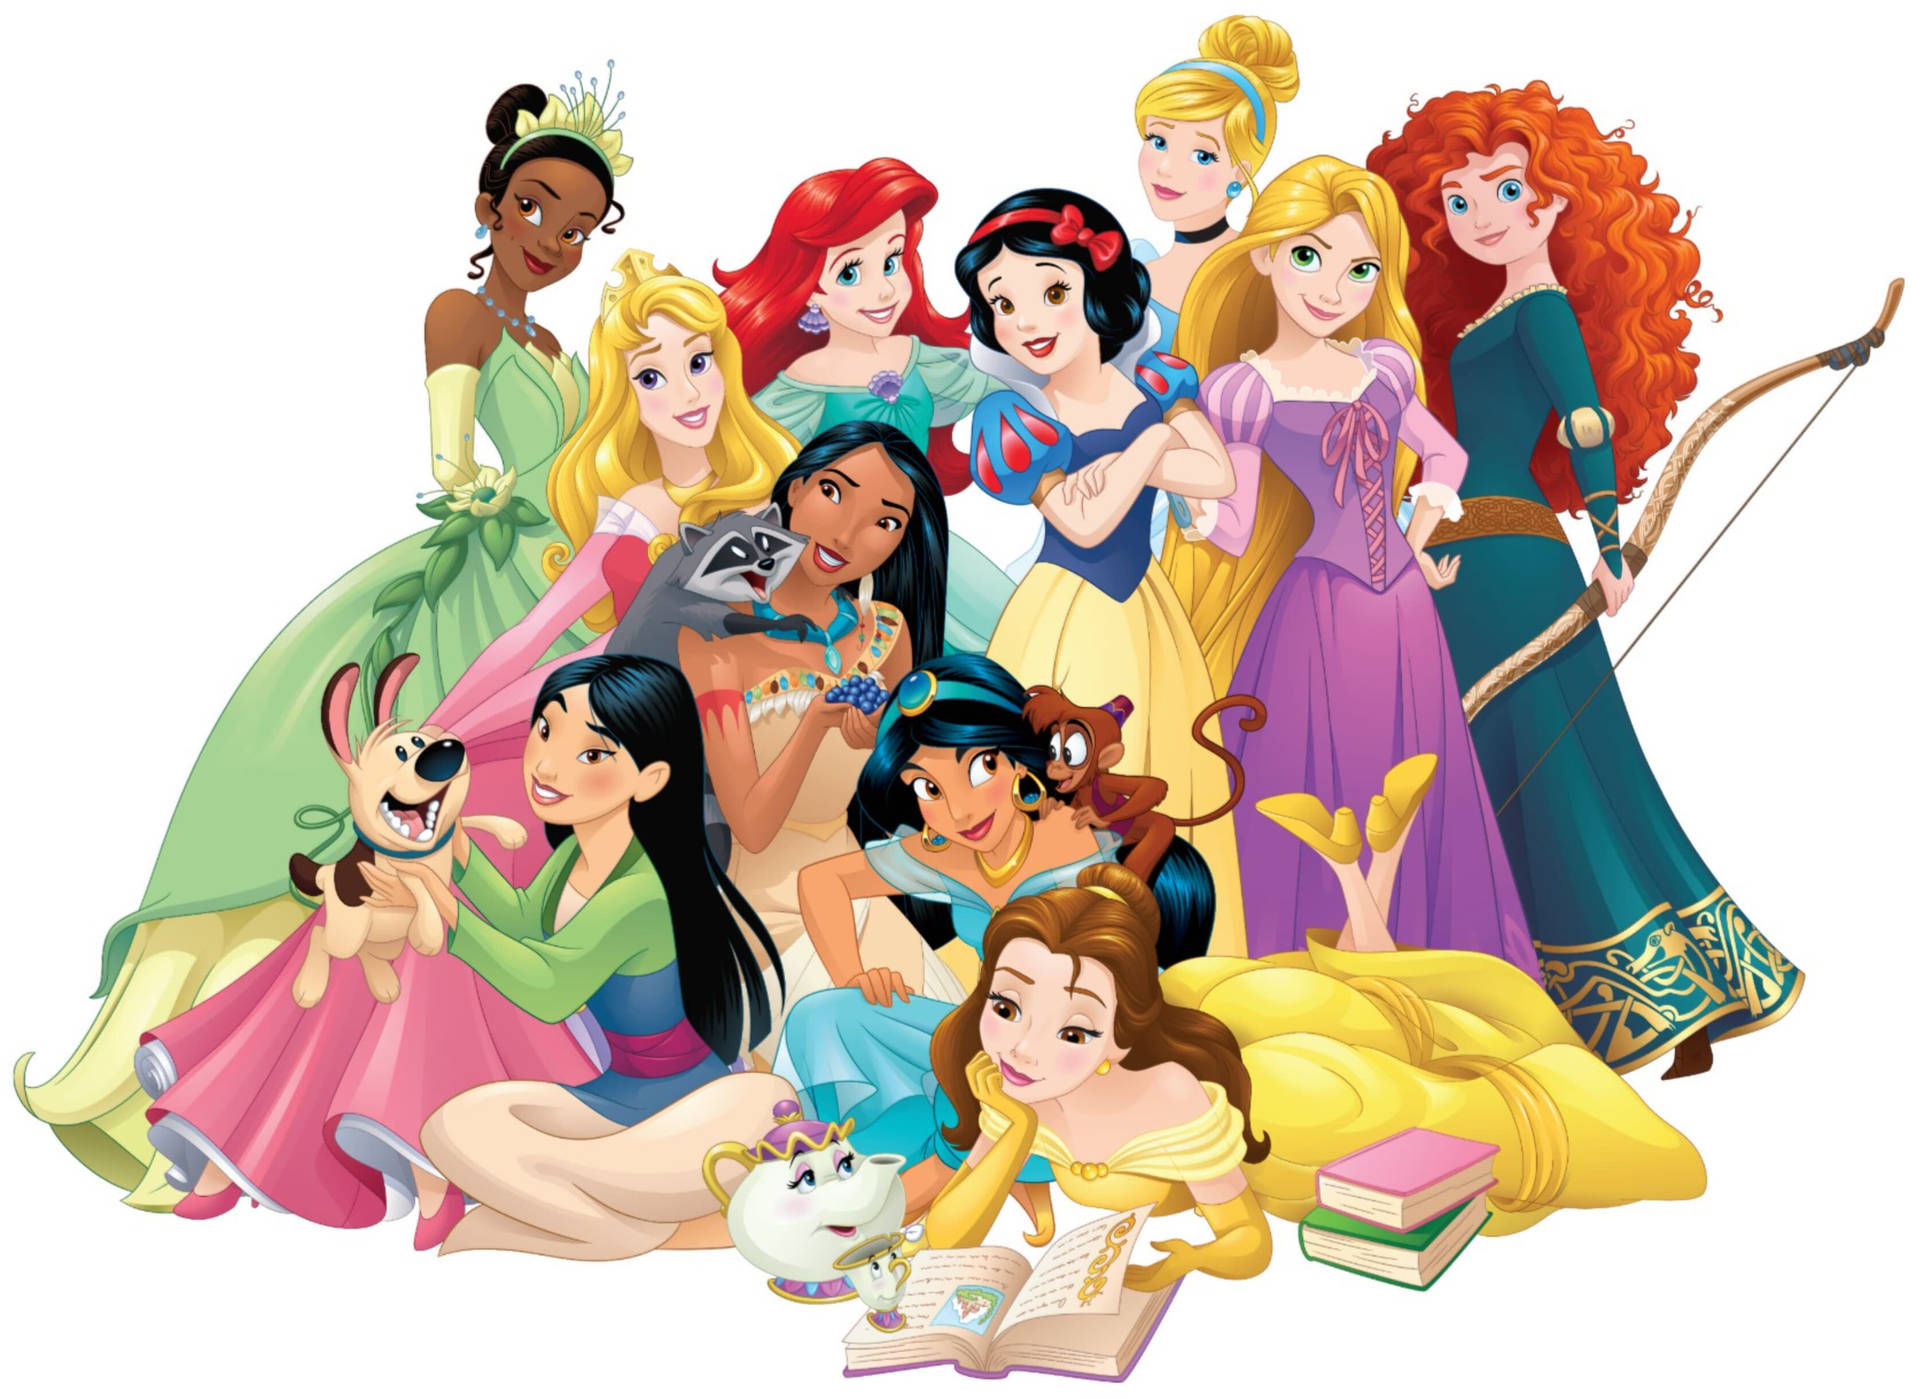 Free Disney Princess Wallpaper Downloads, [200+] Disney Princess Wallpapers  for FREE 